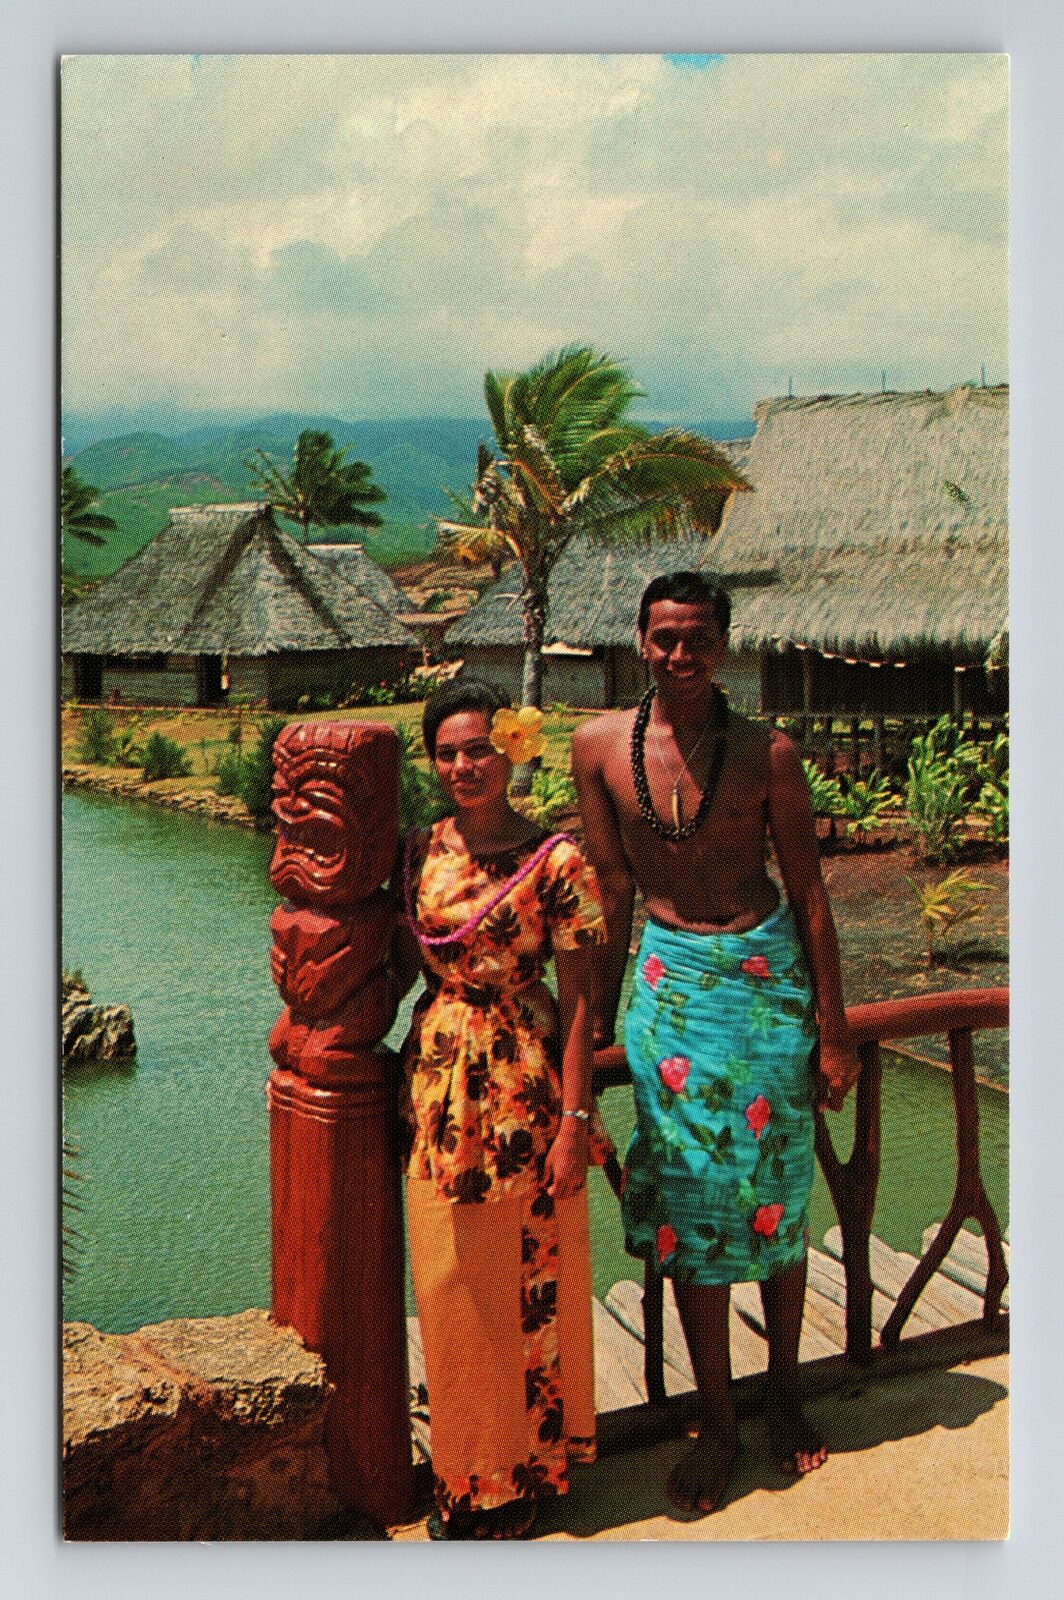 Laie HI-Hawaii, Two Villagers Standing On Bridge, Vintage Postcard